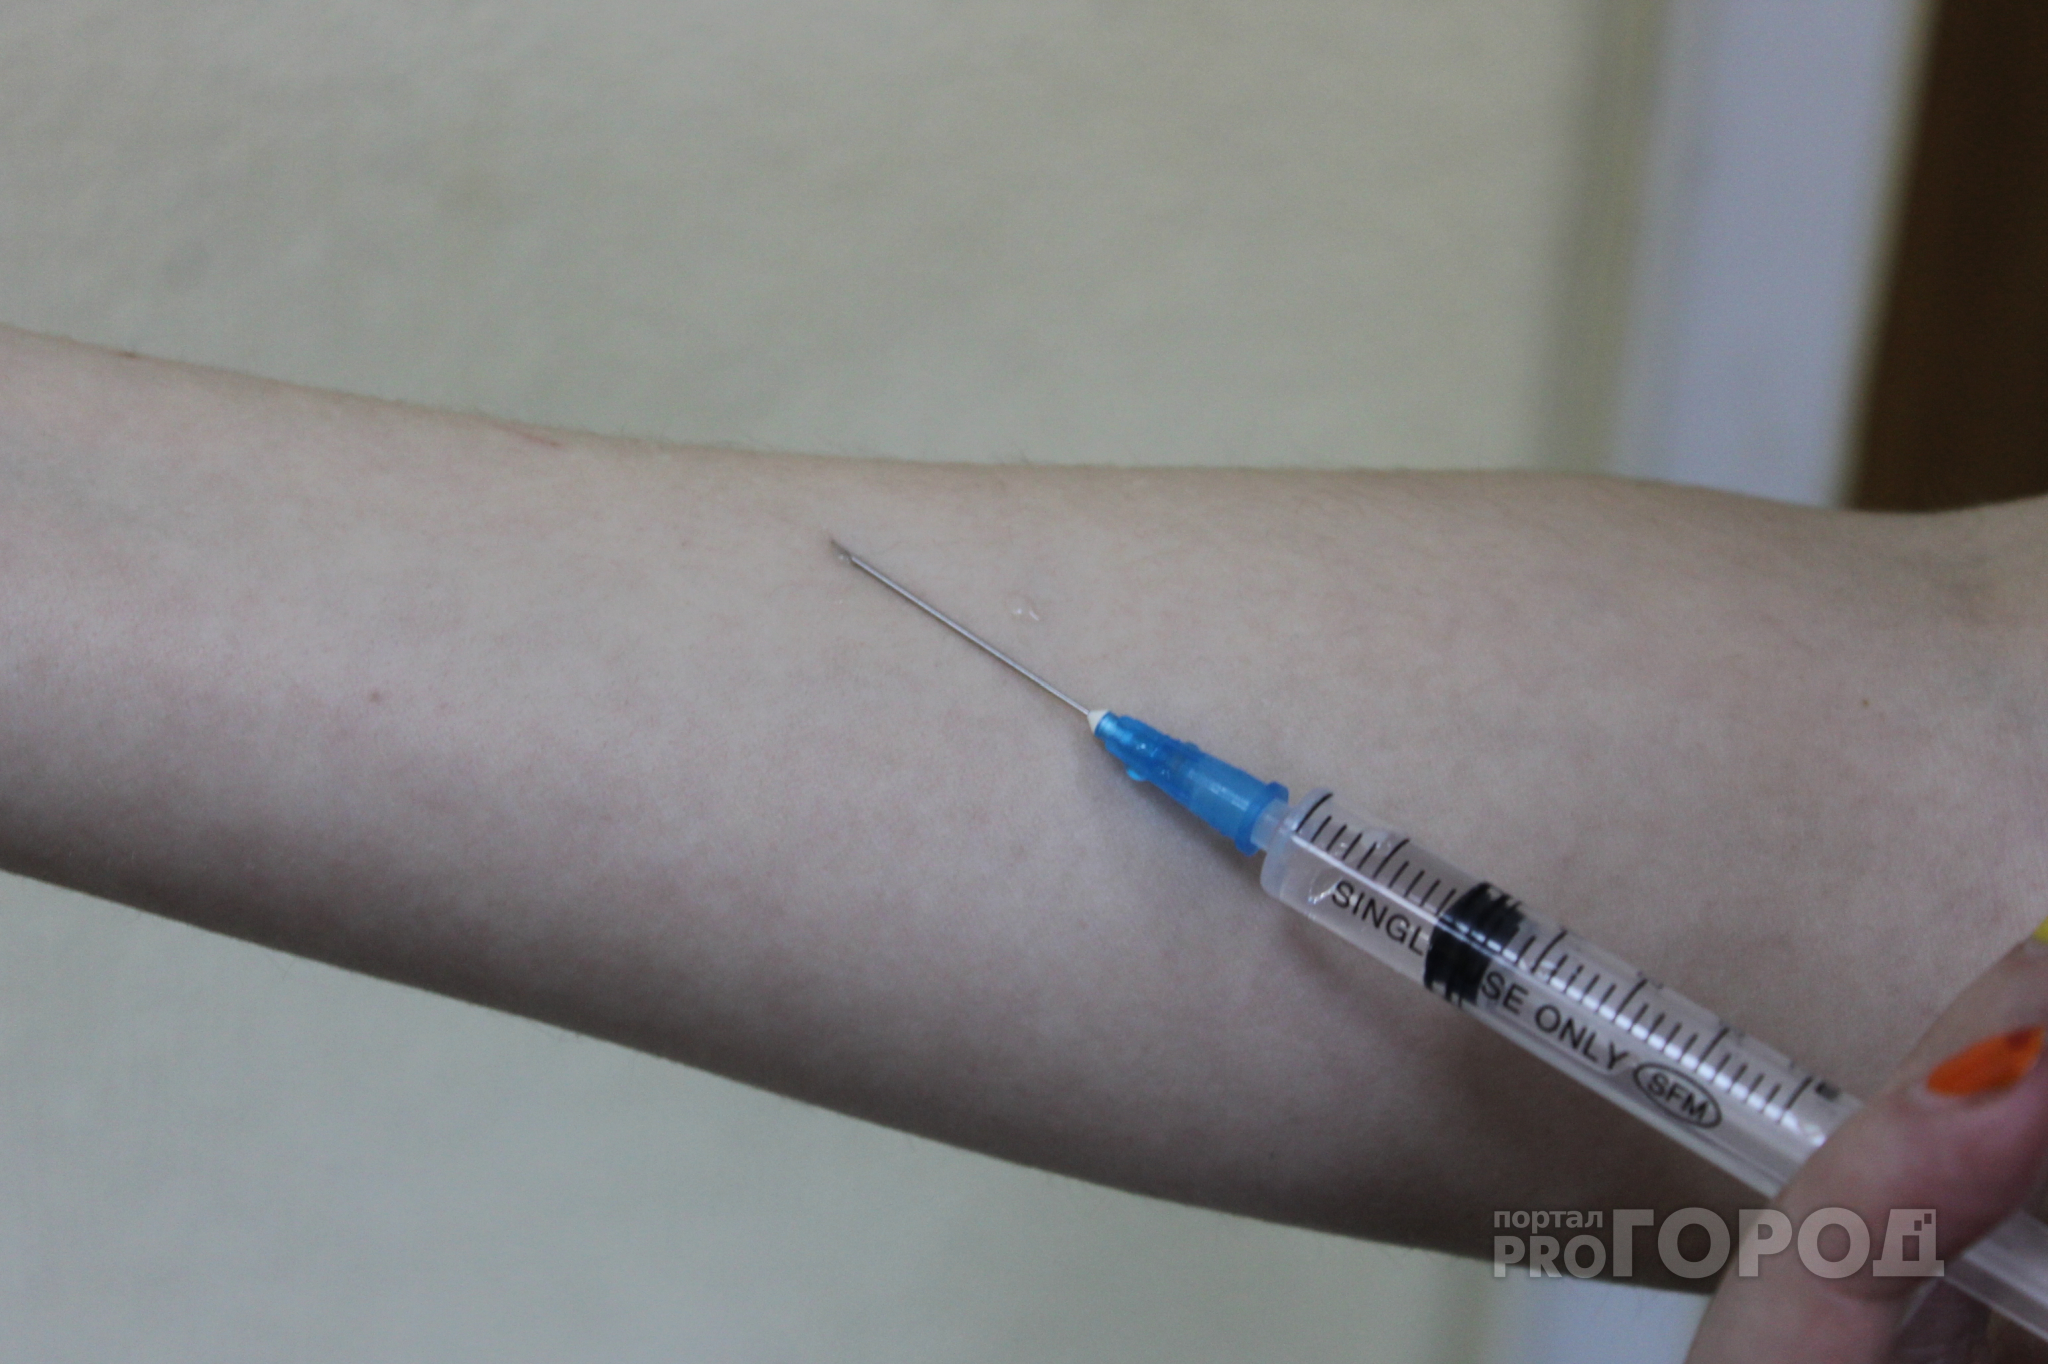 Новости России: В Башкирской больнице детей лечили просроченным инсулином